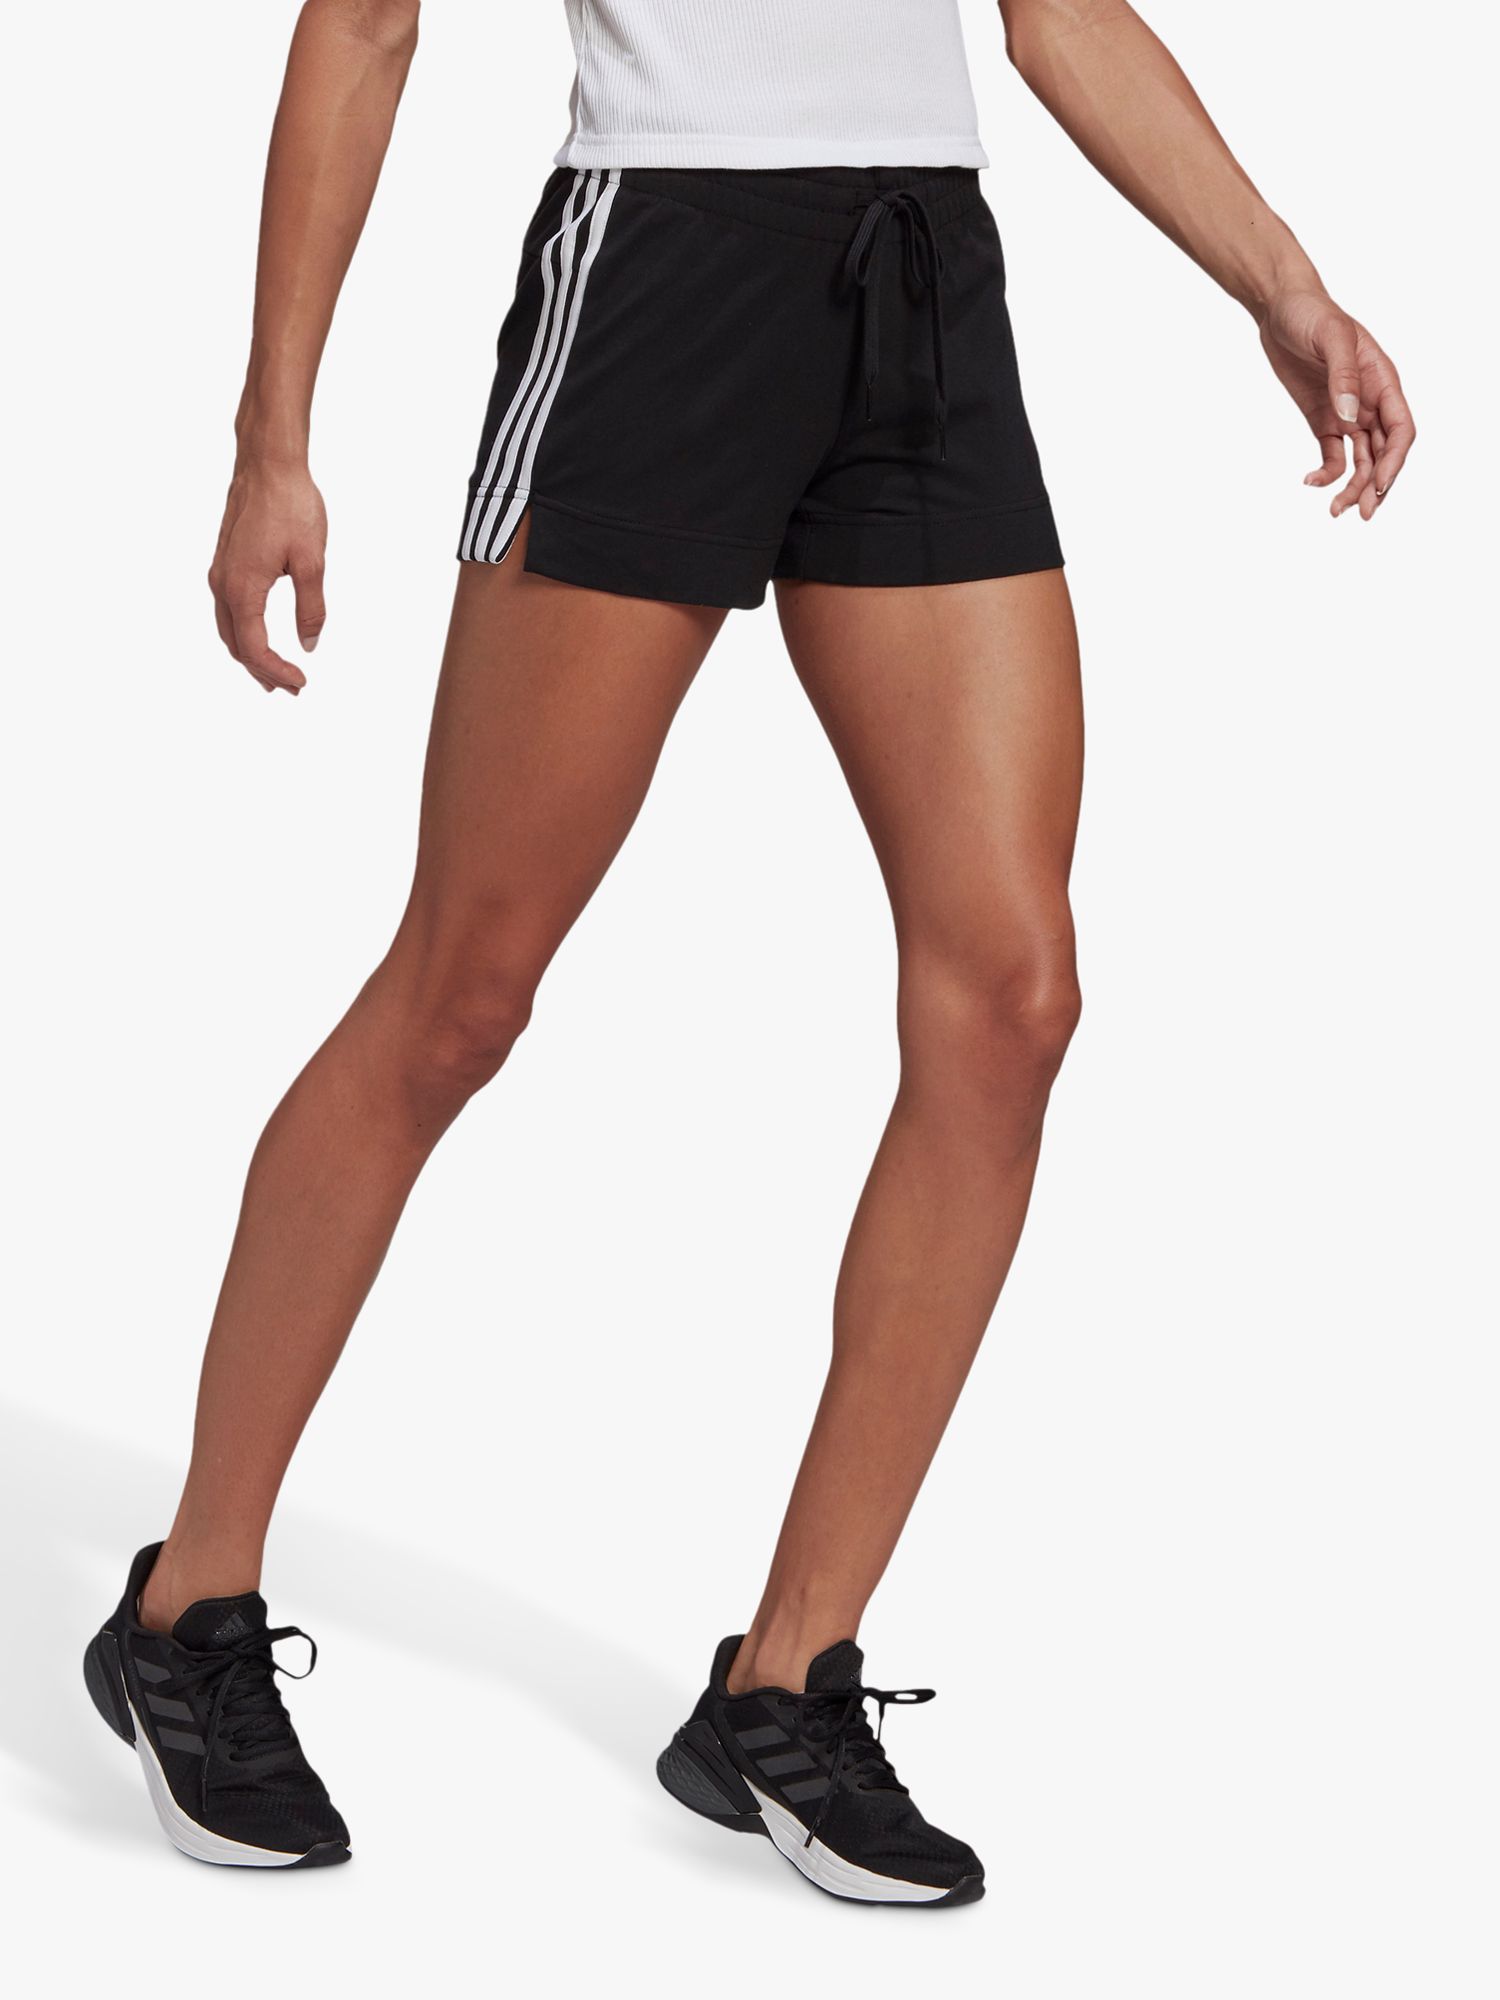 adidas Essentials Slim 3-Stripes Gym Shorts, Black/White